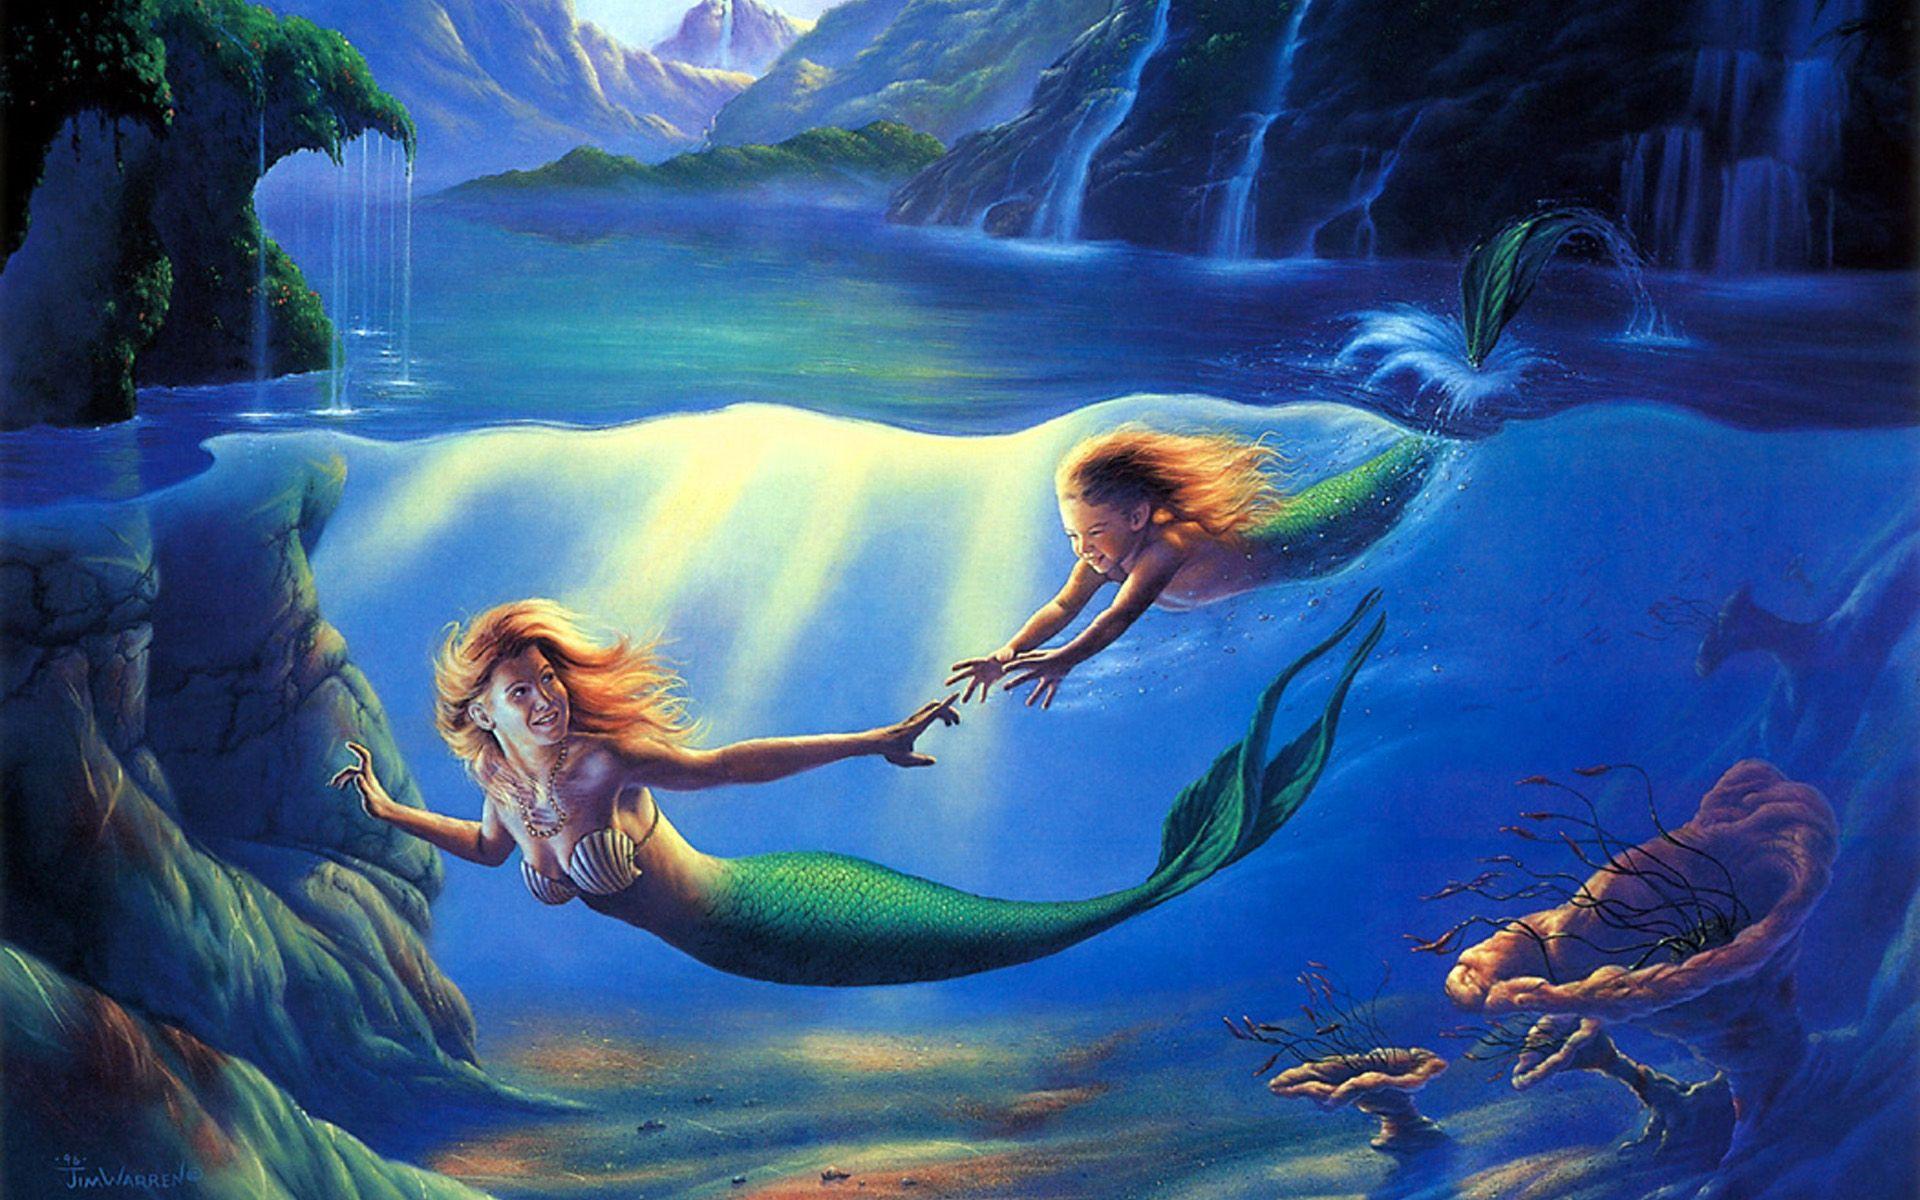 Mermaid Desktop Wallpapers Top Free Mermaid Desktop Backgrounds